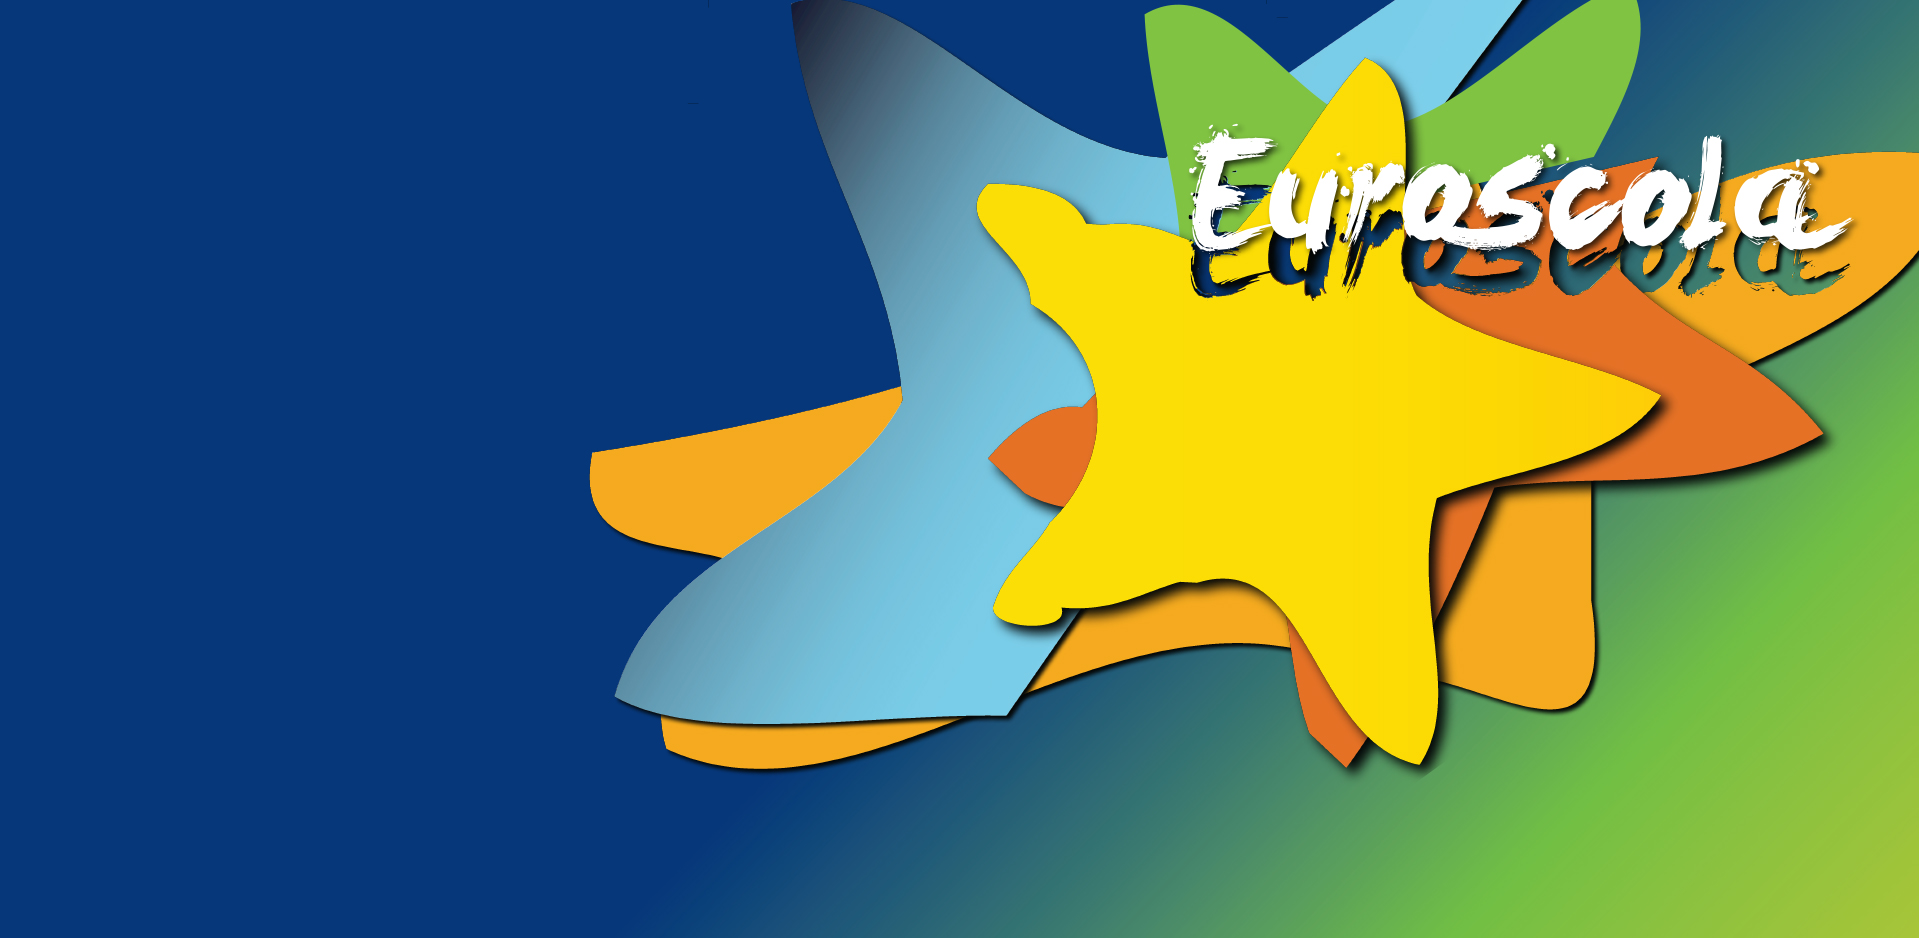 logotipo do concurso euroscola 